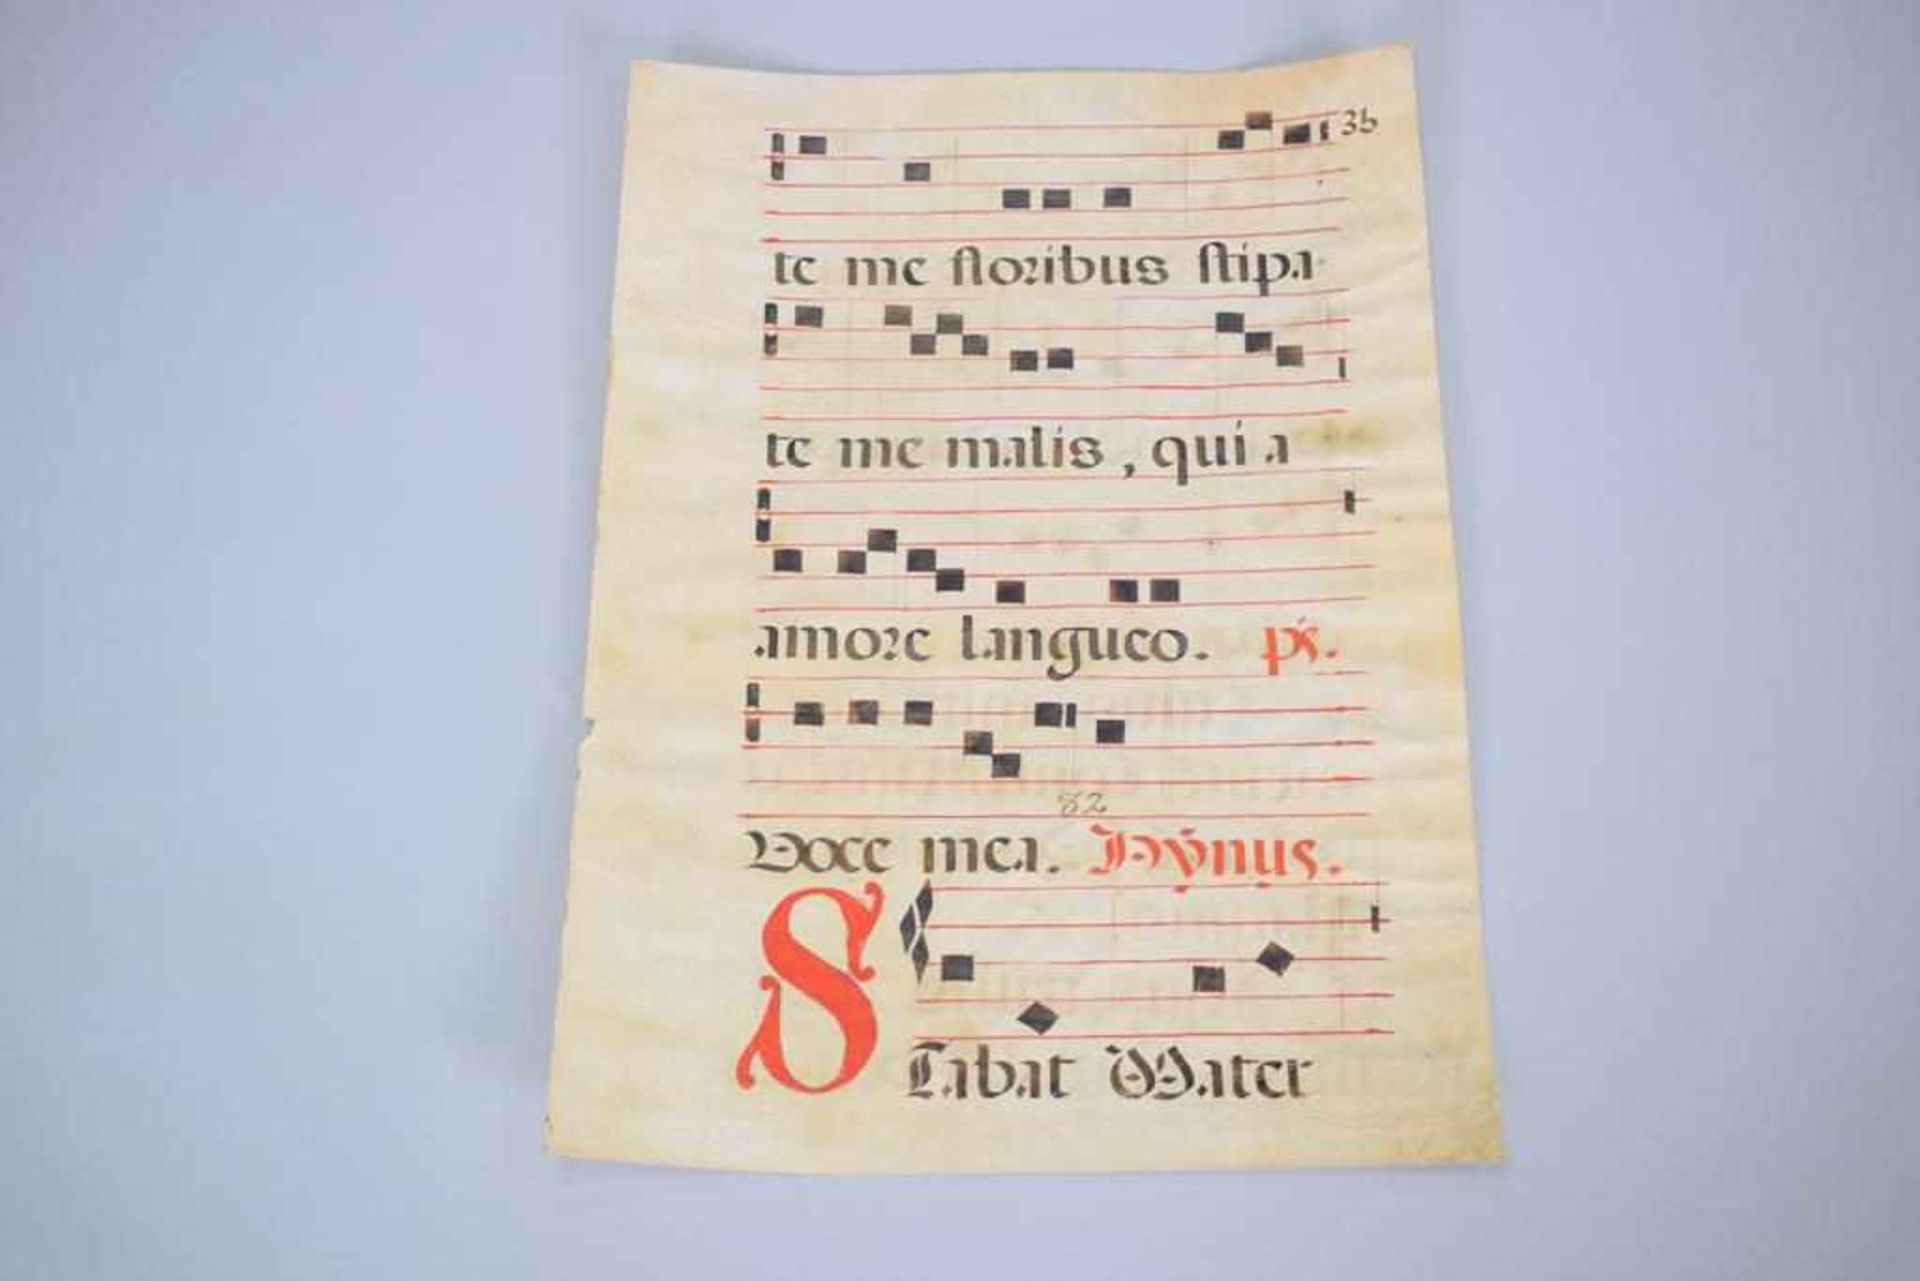 Notenblatt um 16.Jh. in spätmittelalterlicher HandschriftNotenblat aus dem Spätmittelalter auf